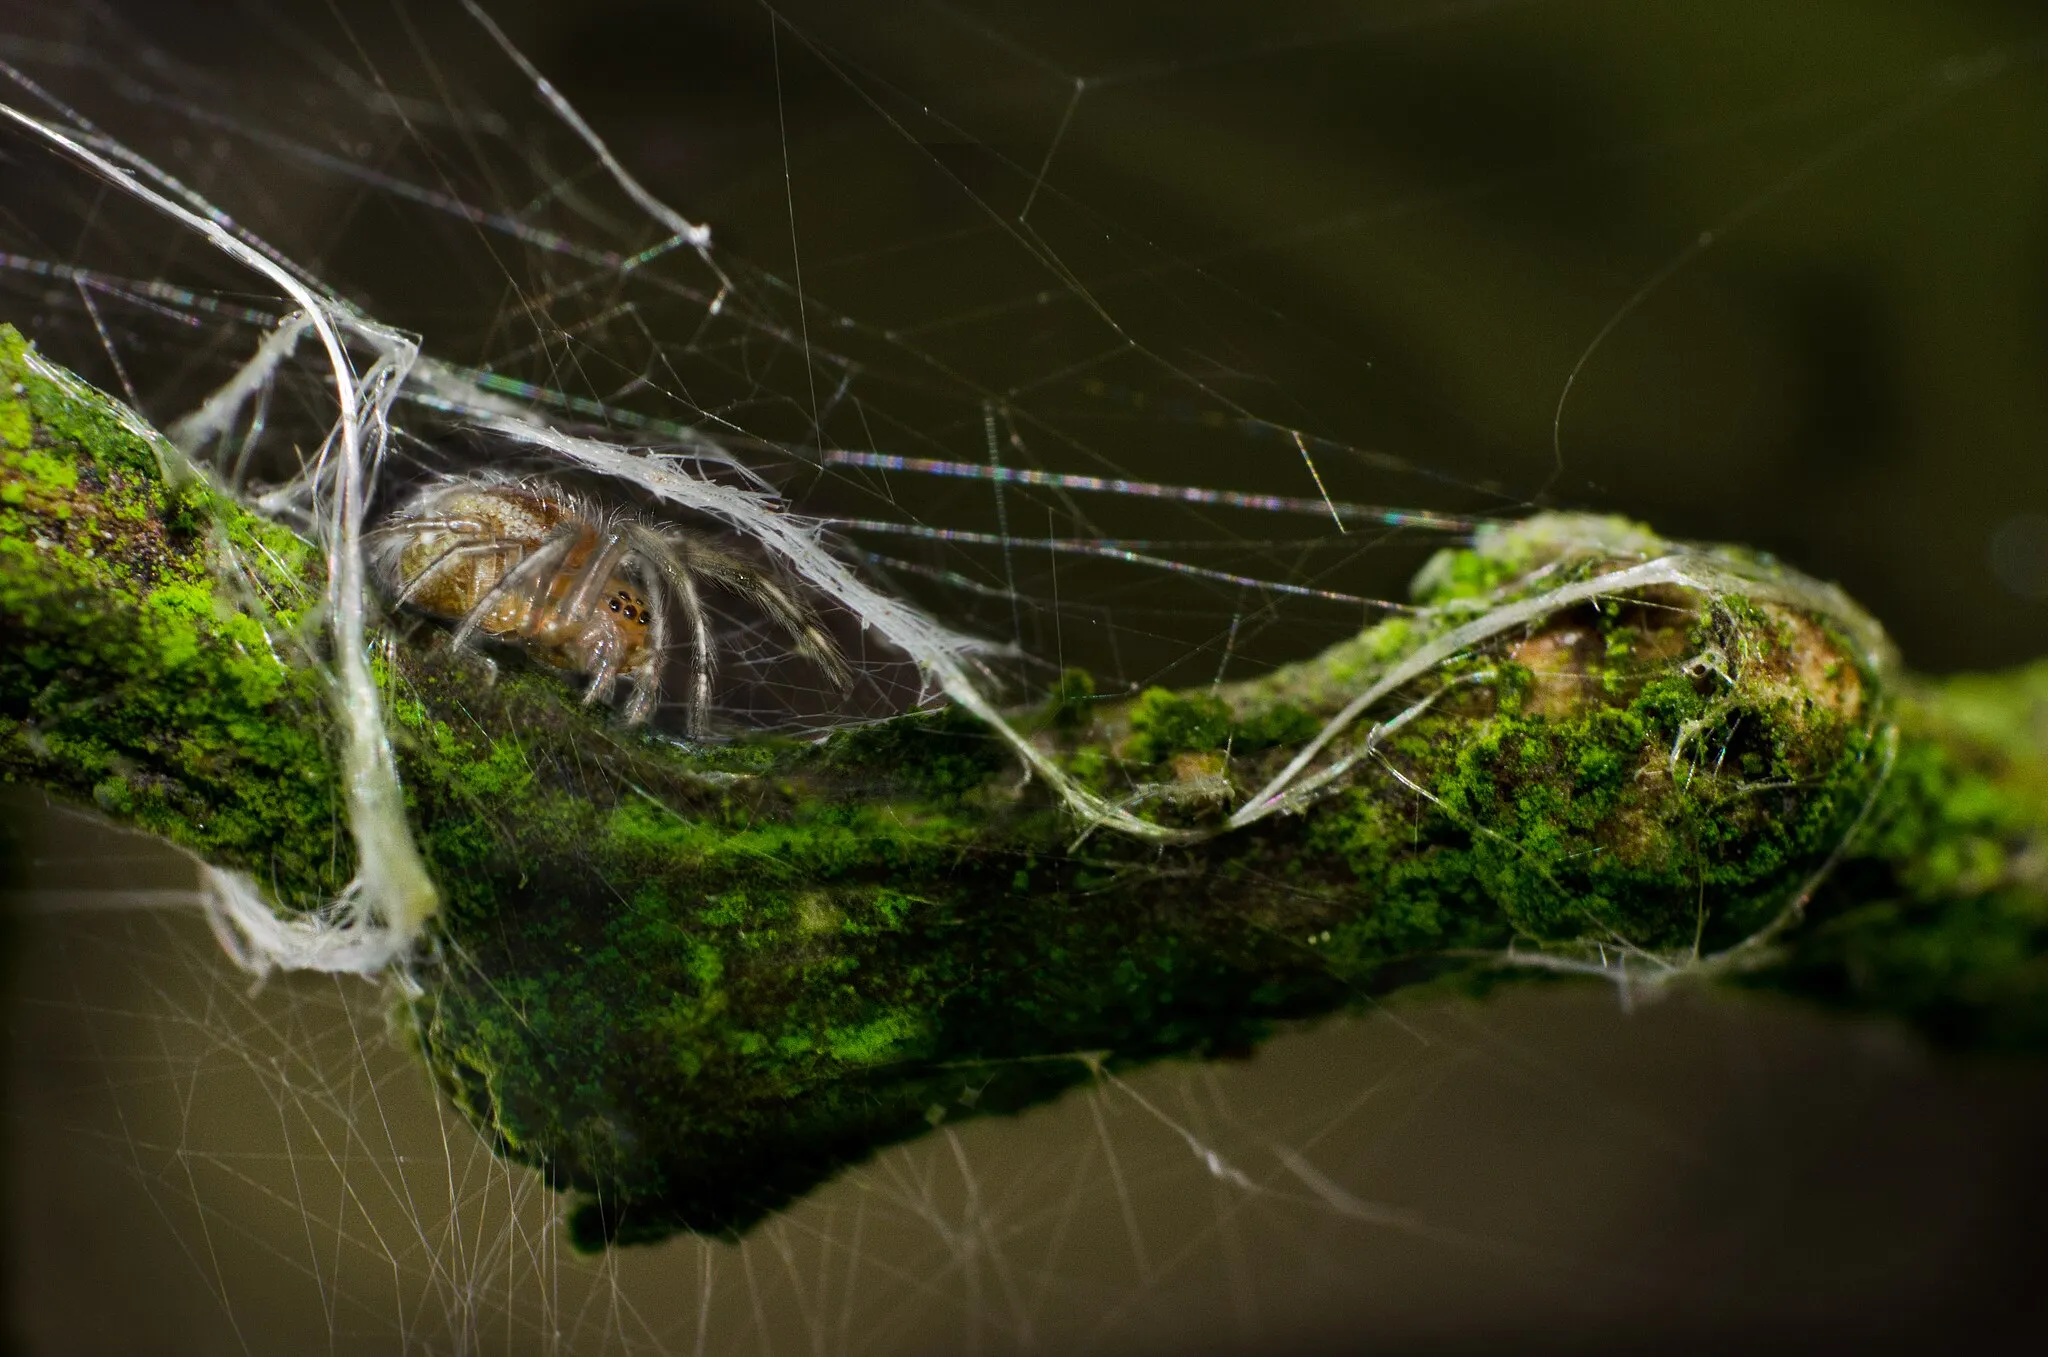 Photo showing: Spinnen sind wohl eine der gefürchtetsten Kriecher. Sie sehen seltsam aus mit ihren vielen Beinen und Augen, sie spinnen große Netze worin sich ihre Mahlzeit verfängt, und man weiß nie wo sie lauern.
Wenn man sie jedoch etwas näher betrachtet, dann erkennt man wie schön sie eigentlich sind. Es gibt sie in den unterschiedlichsten Farben, überseht mit detailreichen Mustern und in jeder Größe und Form.